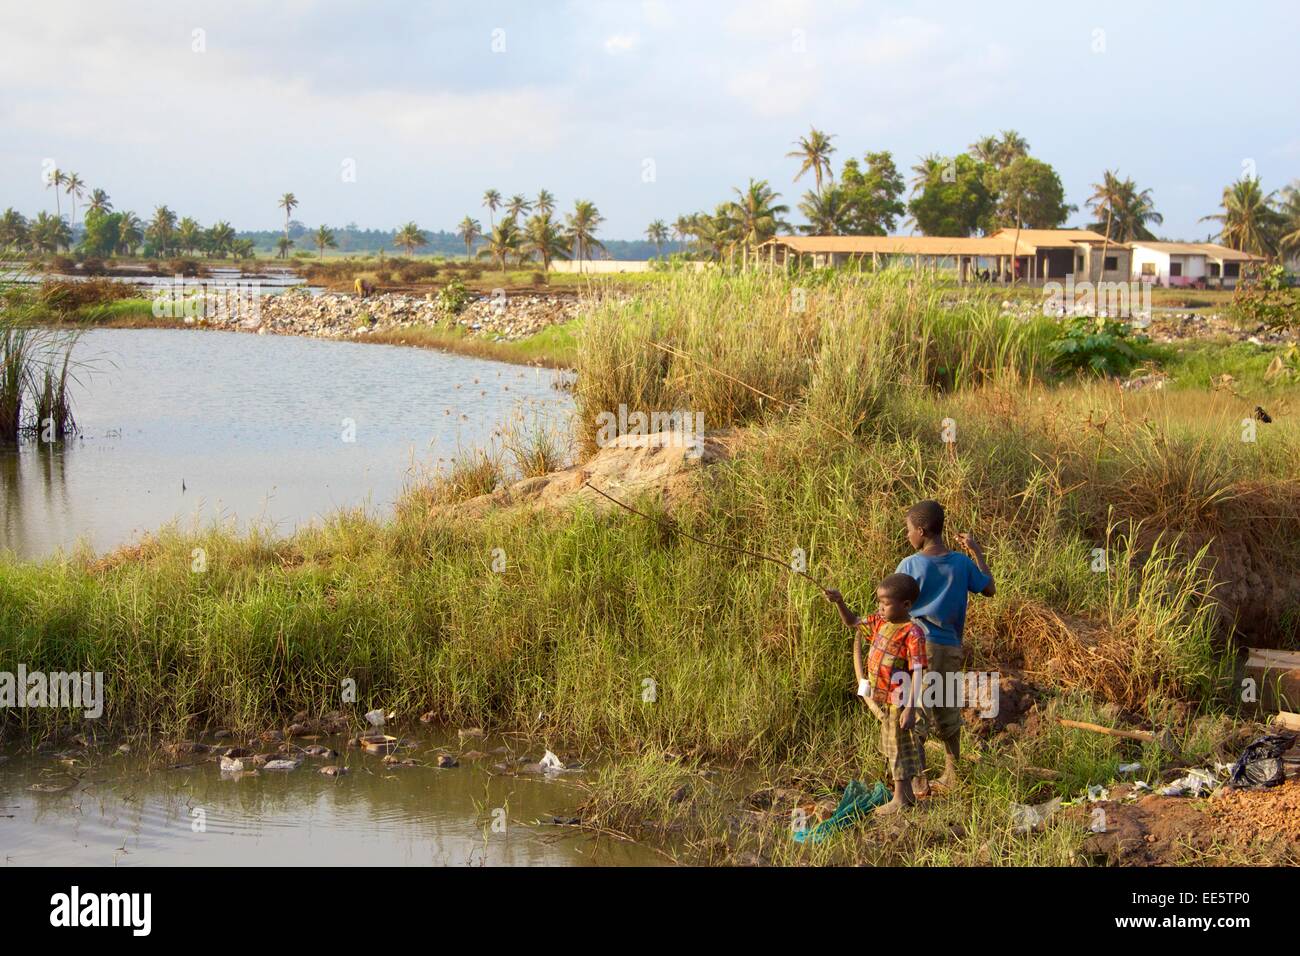 Children fishing in dirty water Ghana Stock Photo